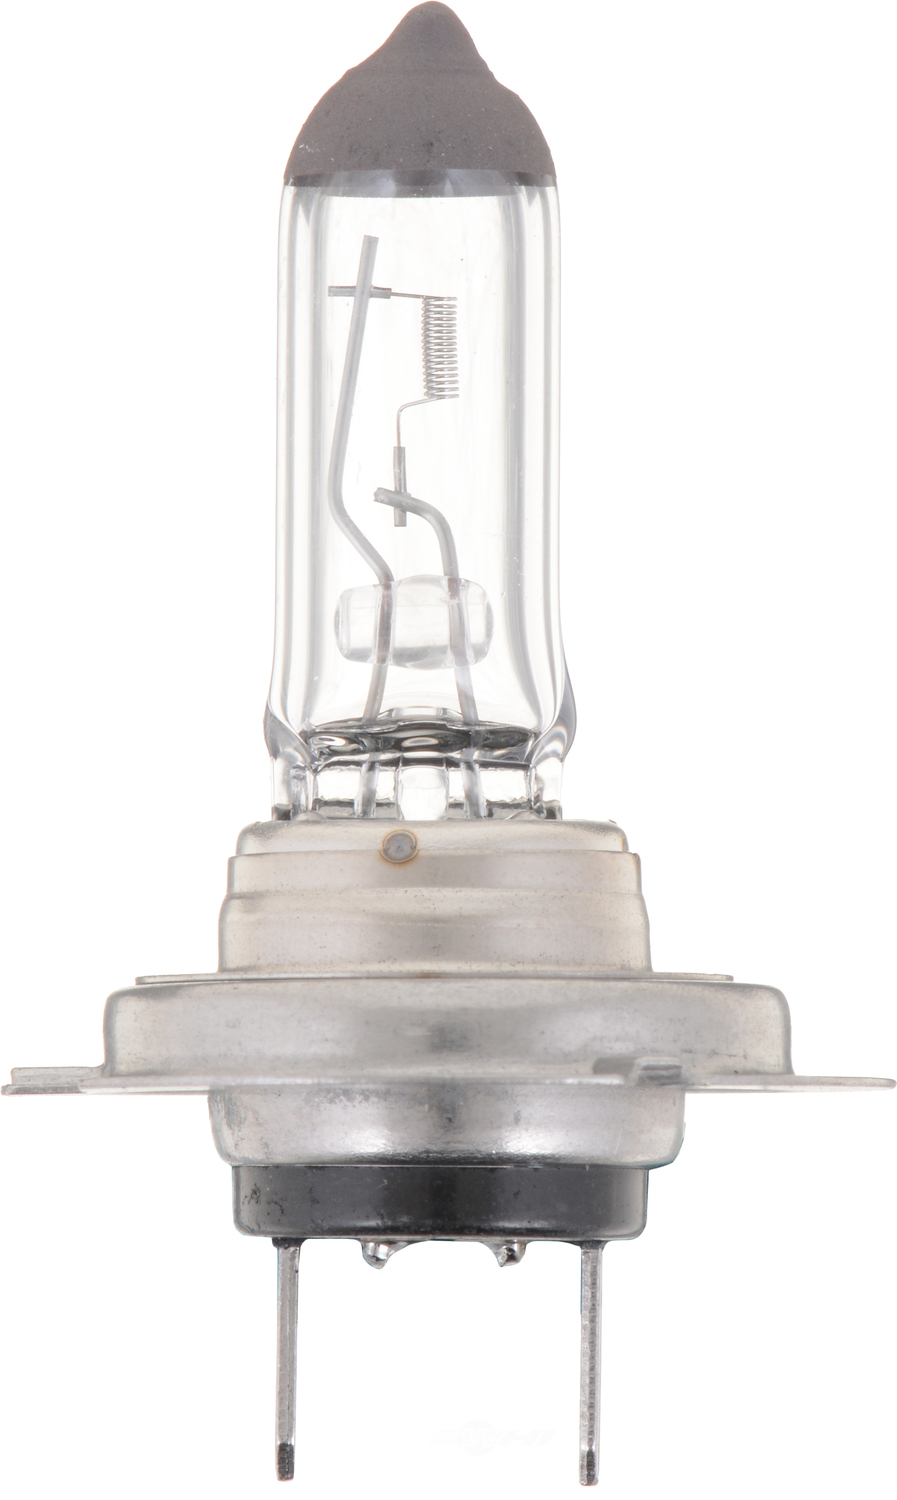 PHILIPS LIGHTING COMPANY - Standard - Single Blister Pack Daytime Running Light Bulb - PLP H7B1